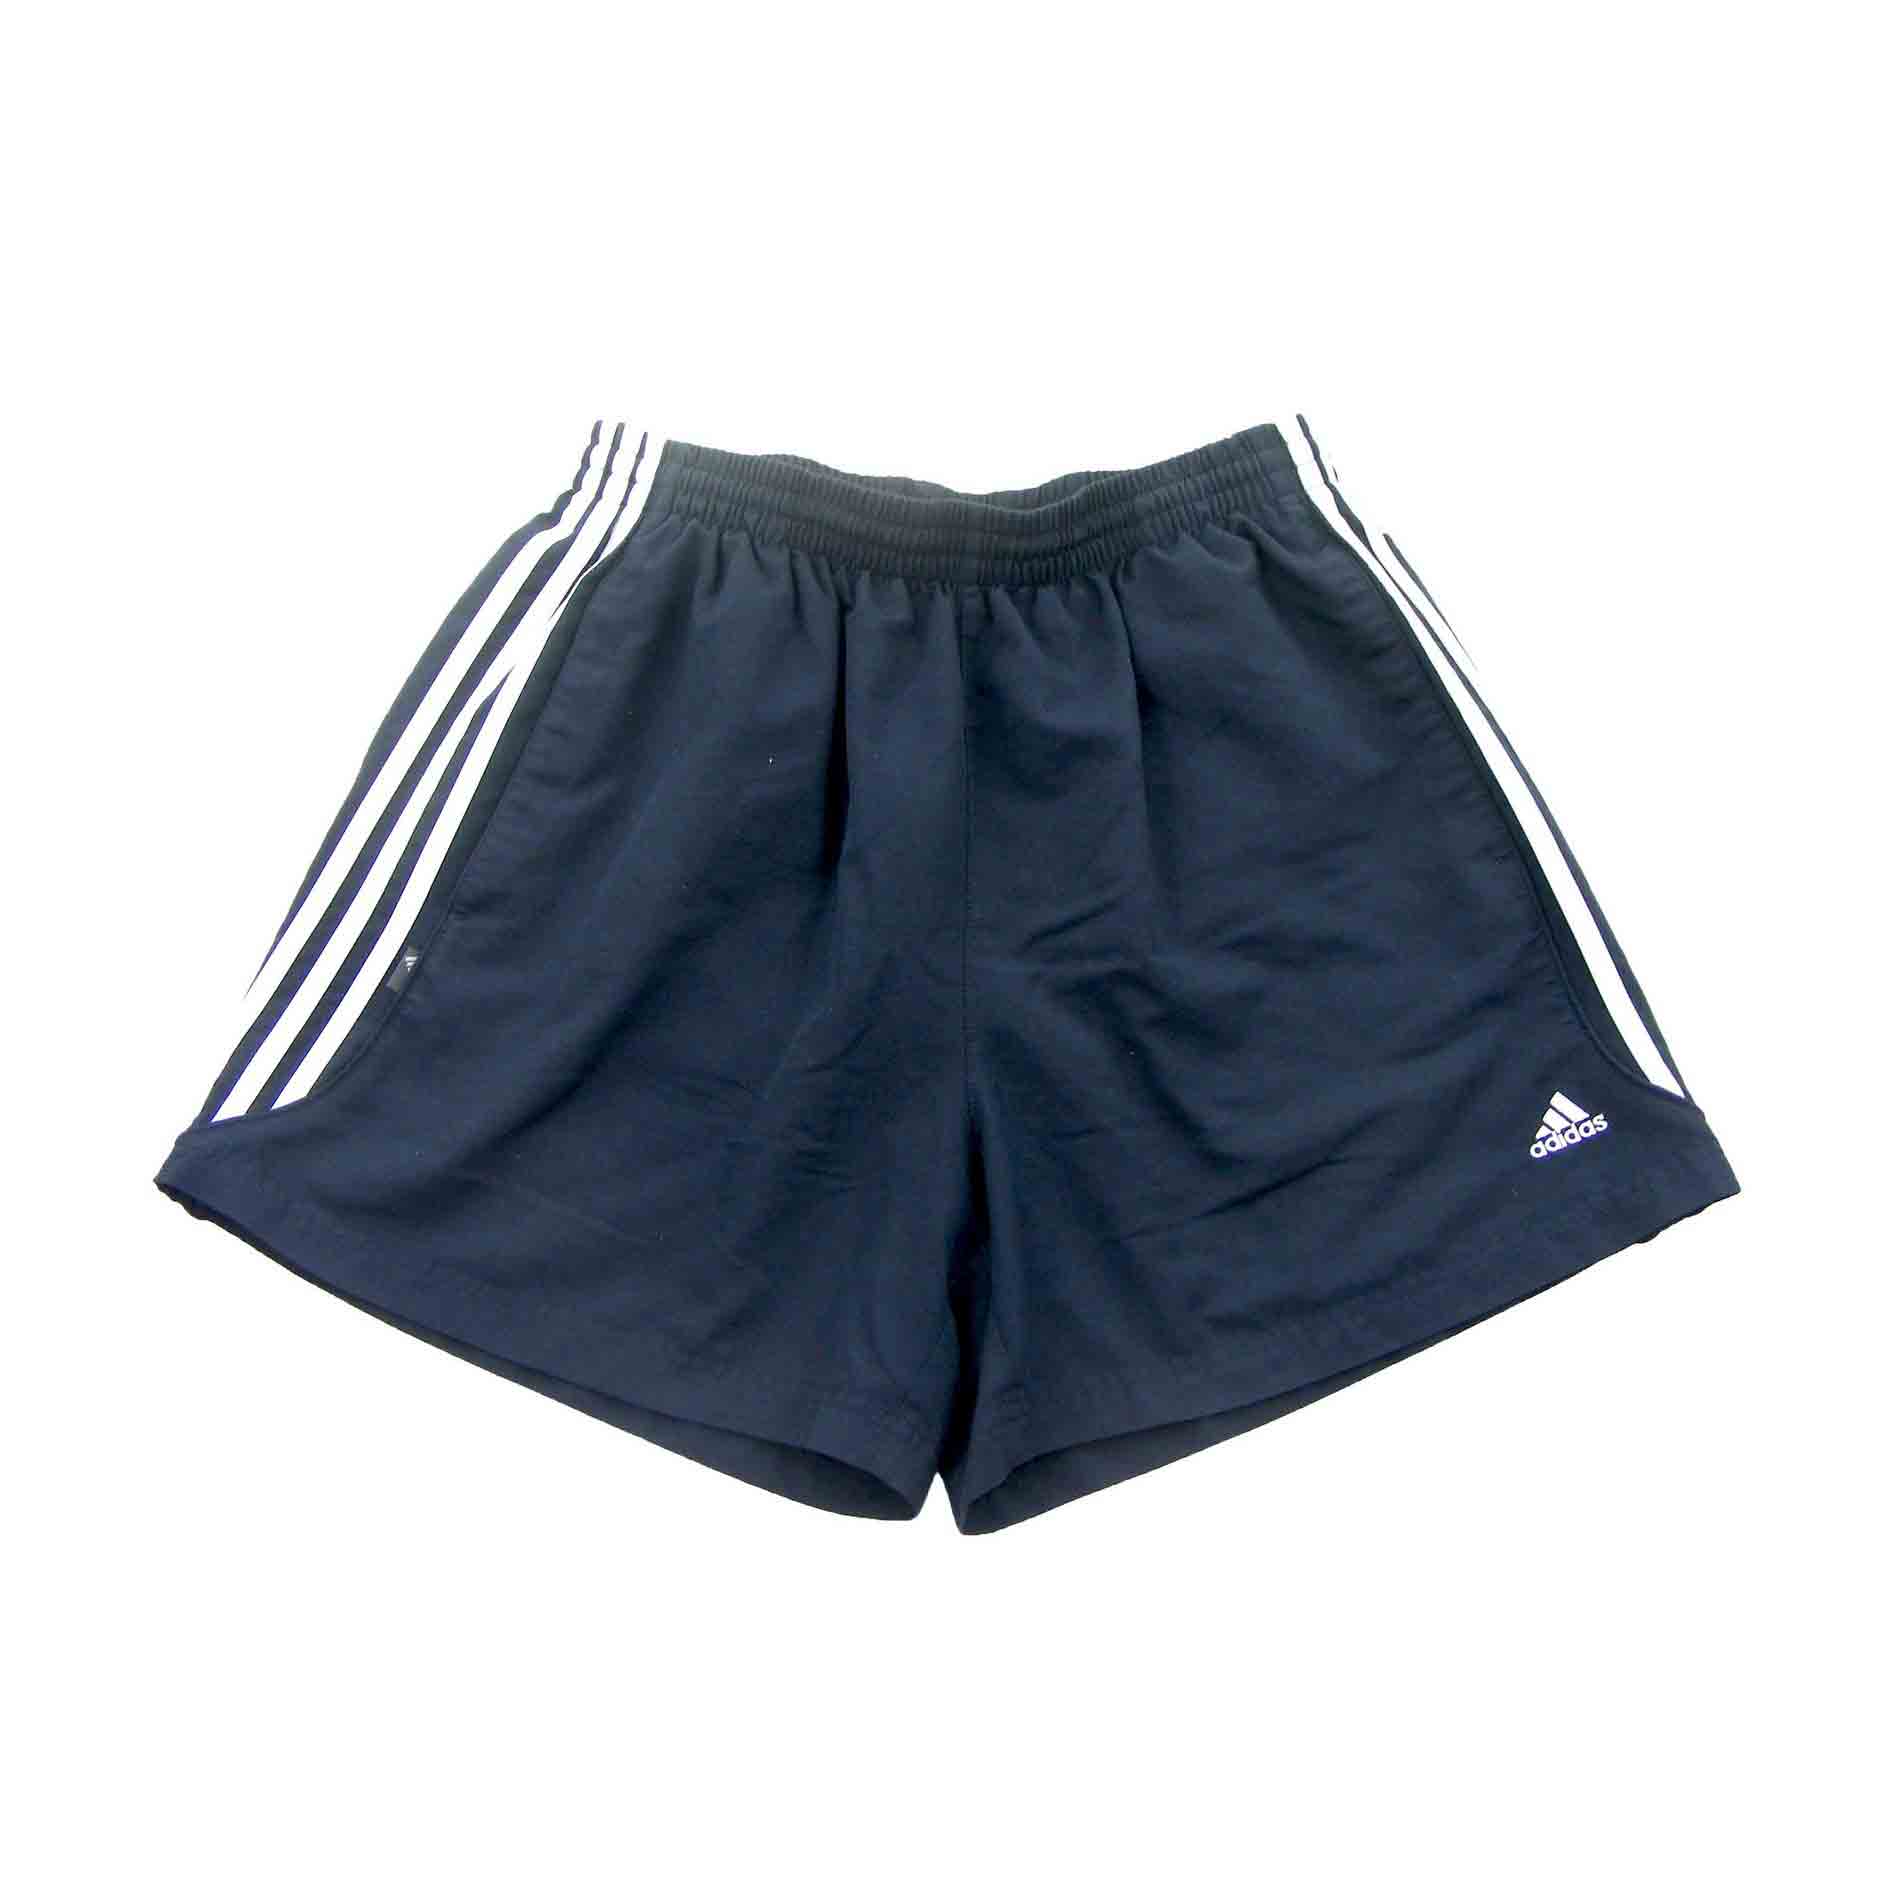 Adidas Navy Shorts - 10 UK Size 10 - Blue 17 Vintage Clothing